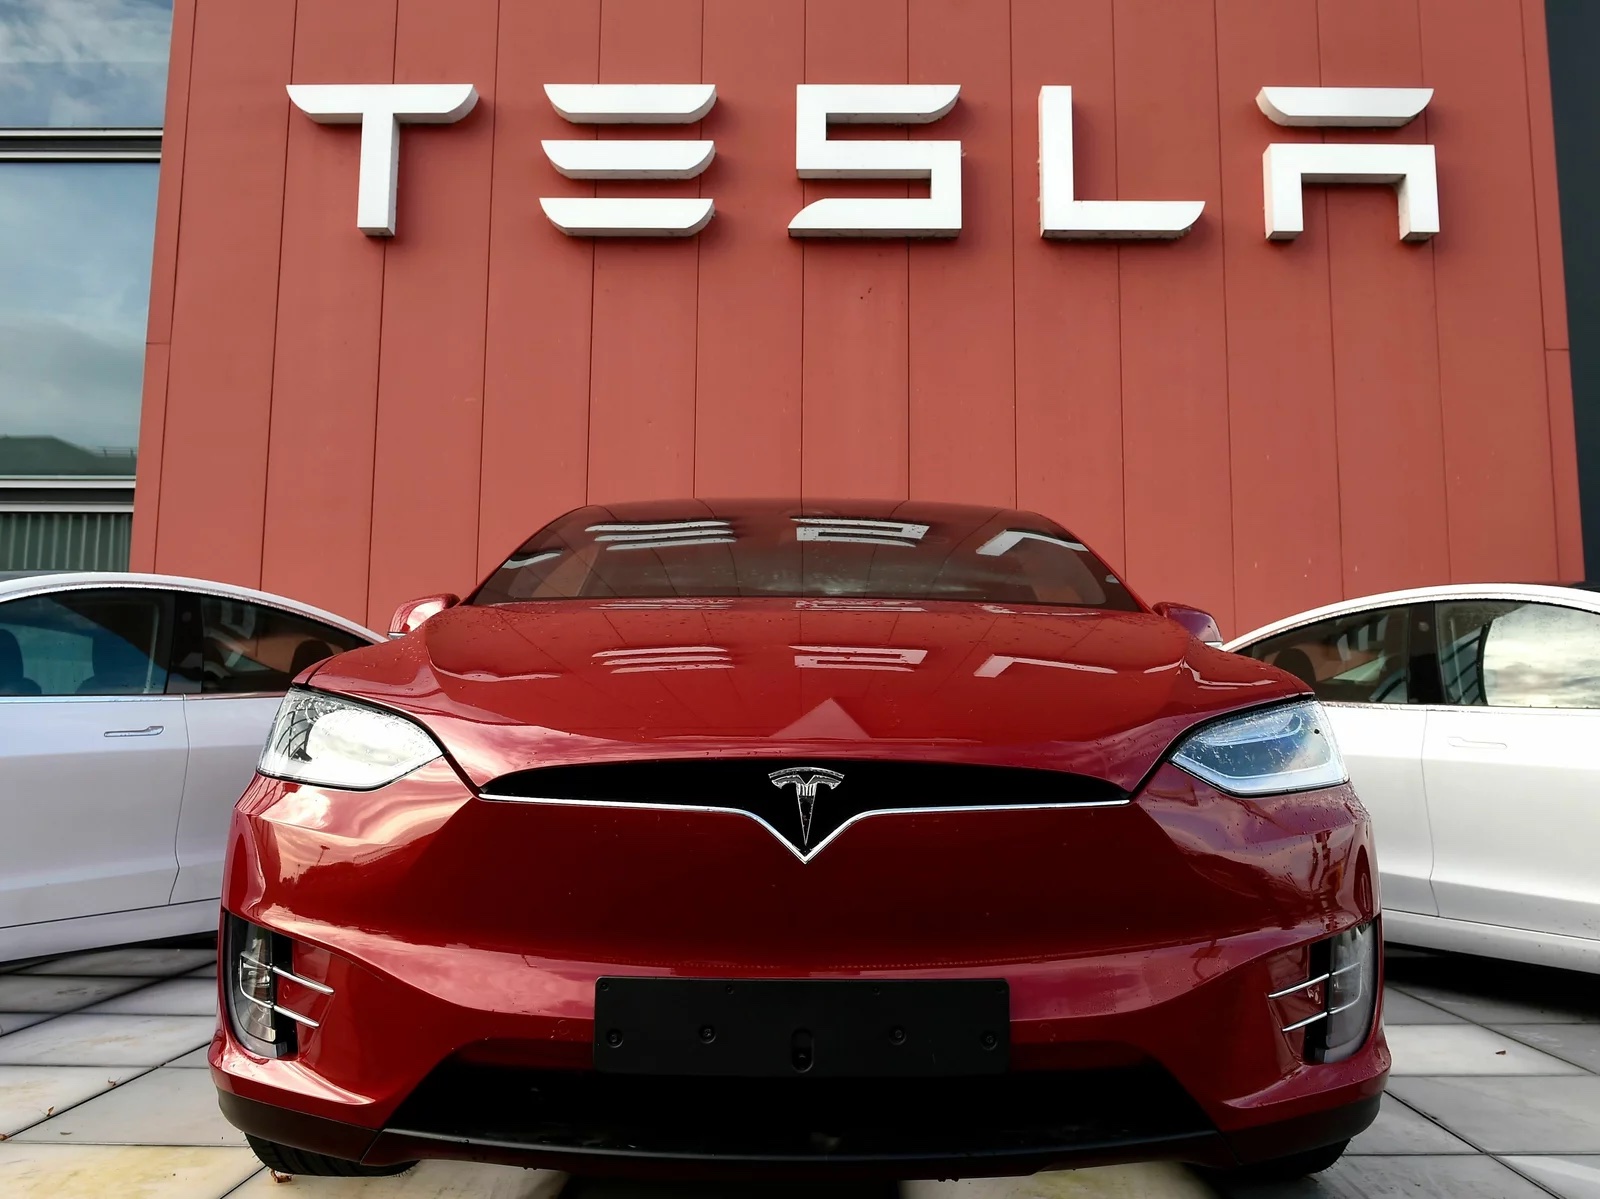 Tesla Inc đã bị kiện bởi những khách hàng cho rằng họ đã bị buộc phải trả giá cắt cổ và phải chờ đợi lâu để sửa chữa ô tô do công ty độc quyền về các bộ phận thay thế cũng như dịch vụ bảo trì và sửa chữa. Ảnh: @AFP.